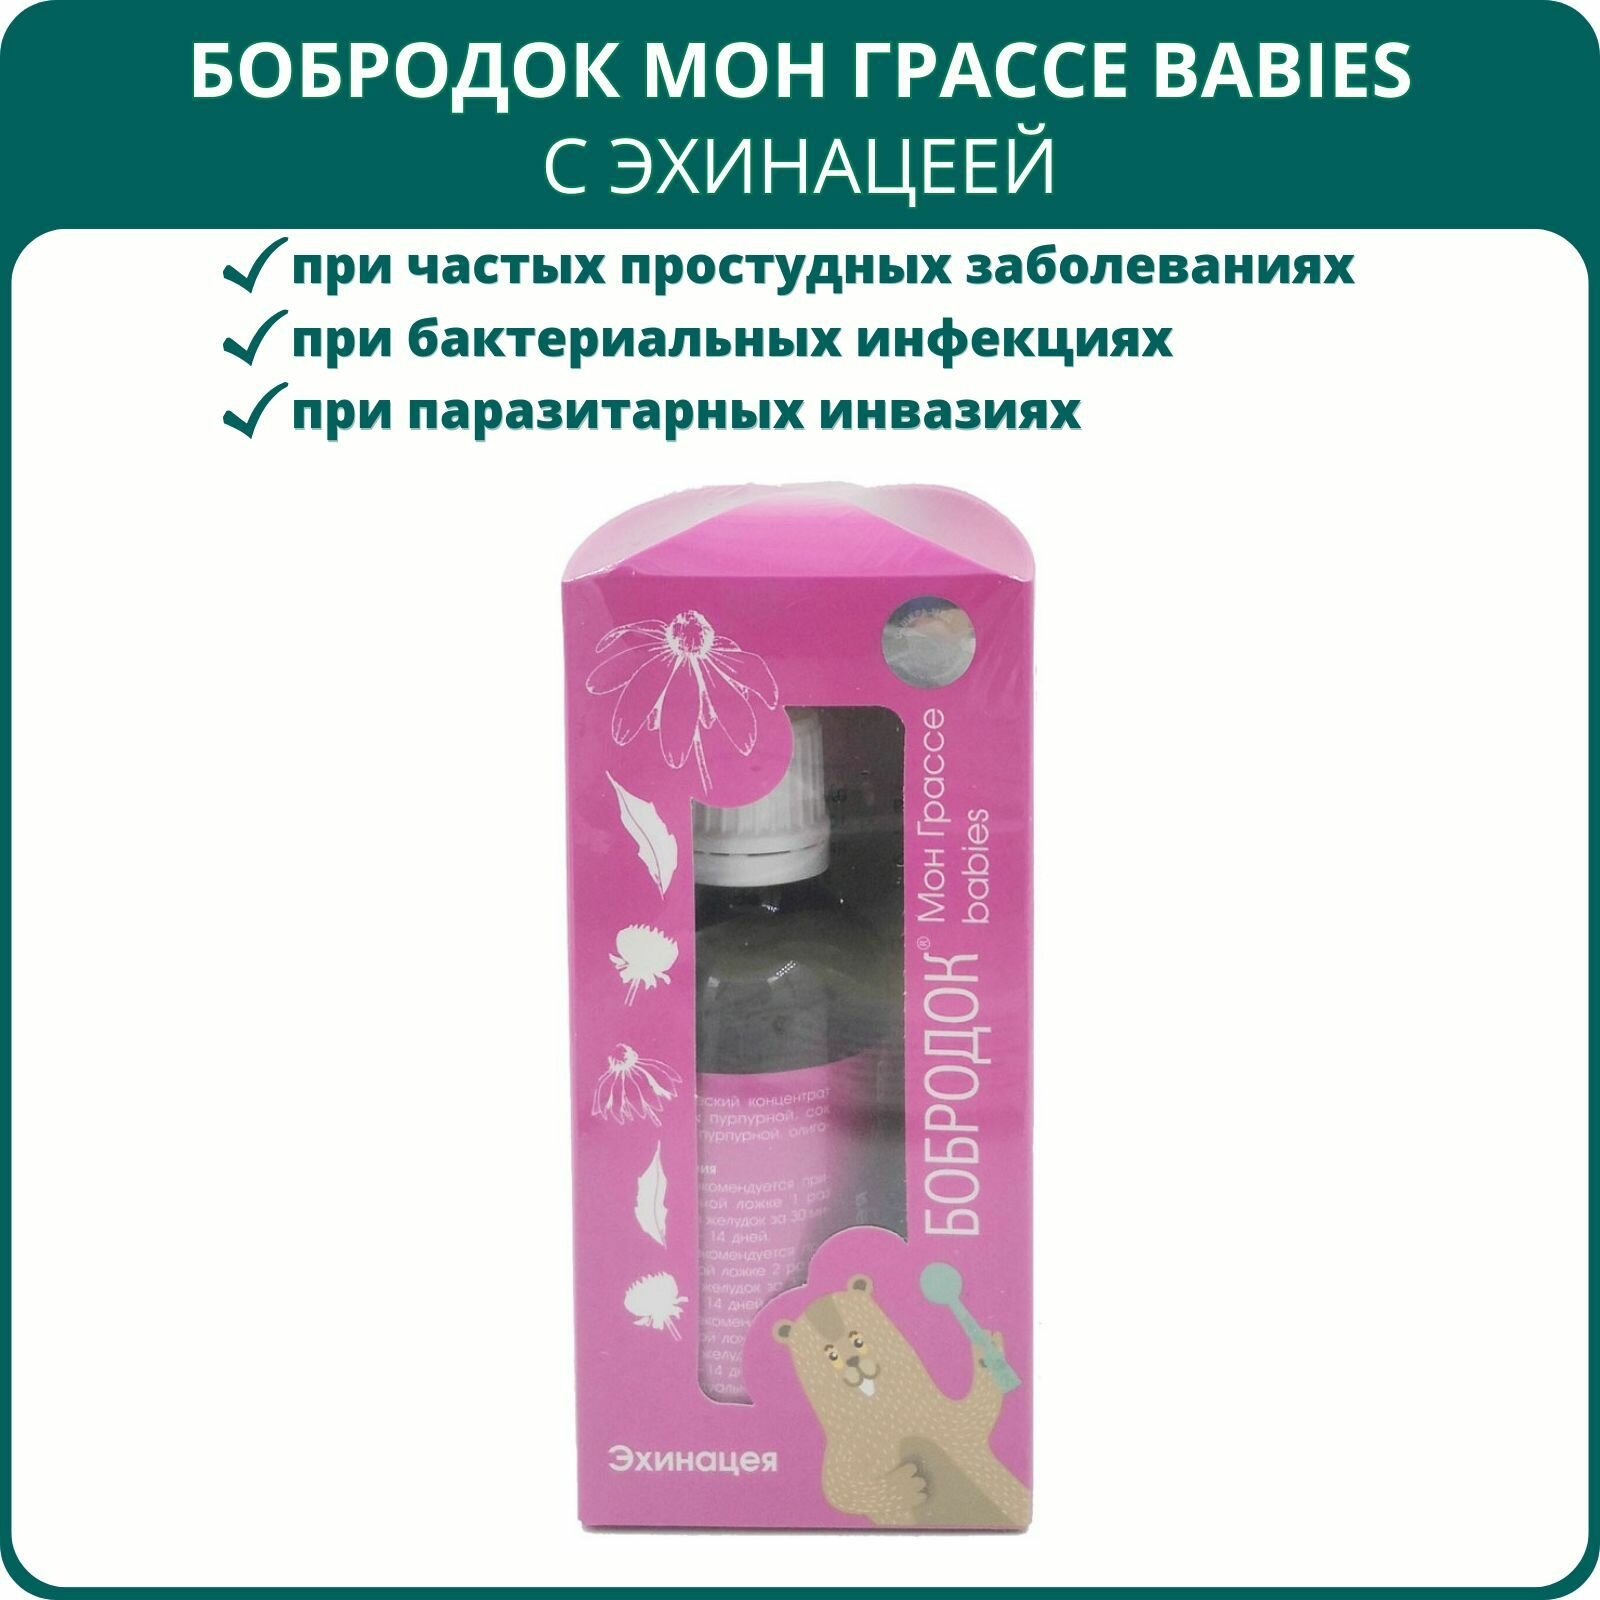 Бобродок Мон Грассе babies с эхинацеей для иммунитета, 50 мл. Сироп без сахара для детей при частых вирусных заболеваниях. Комплексная пищевая добавка